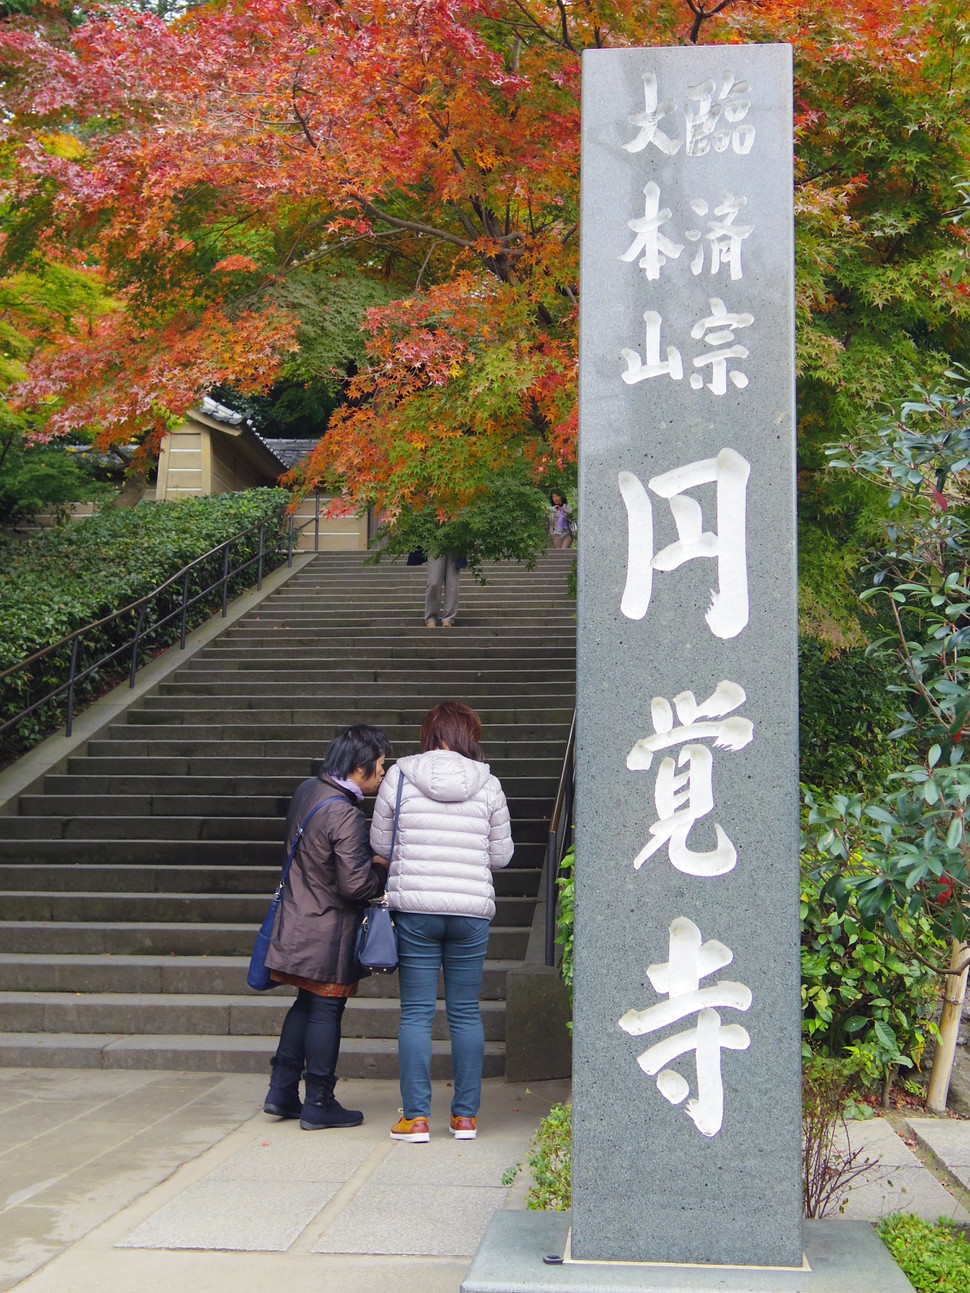 鎌倉さんぽ 秋の絶景は鎌倉にアリ 格式あるお寺 円覚寺 は紅葉の名所だった Playlife プレイライフ